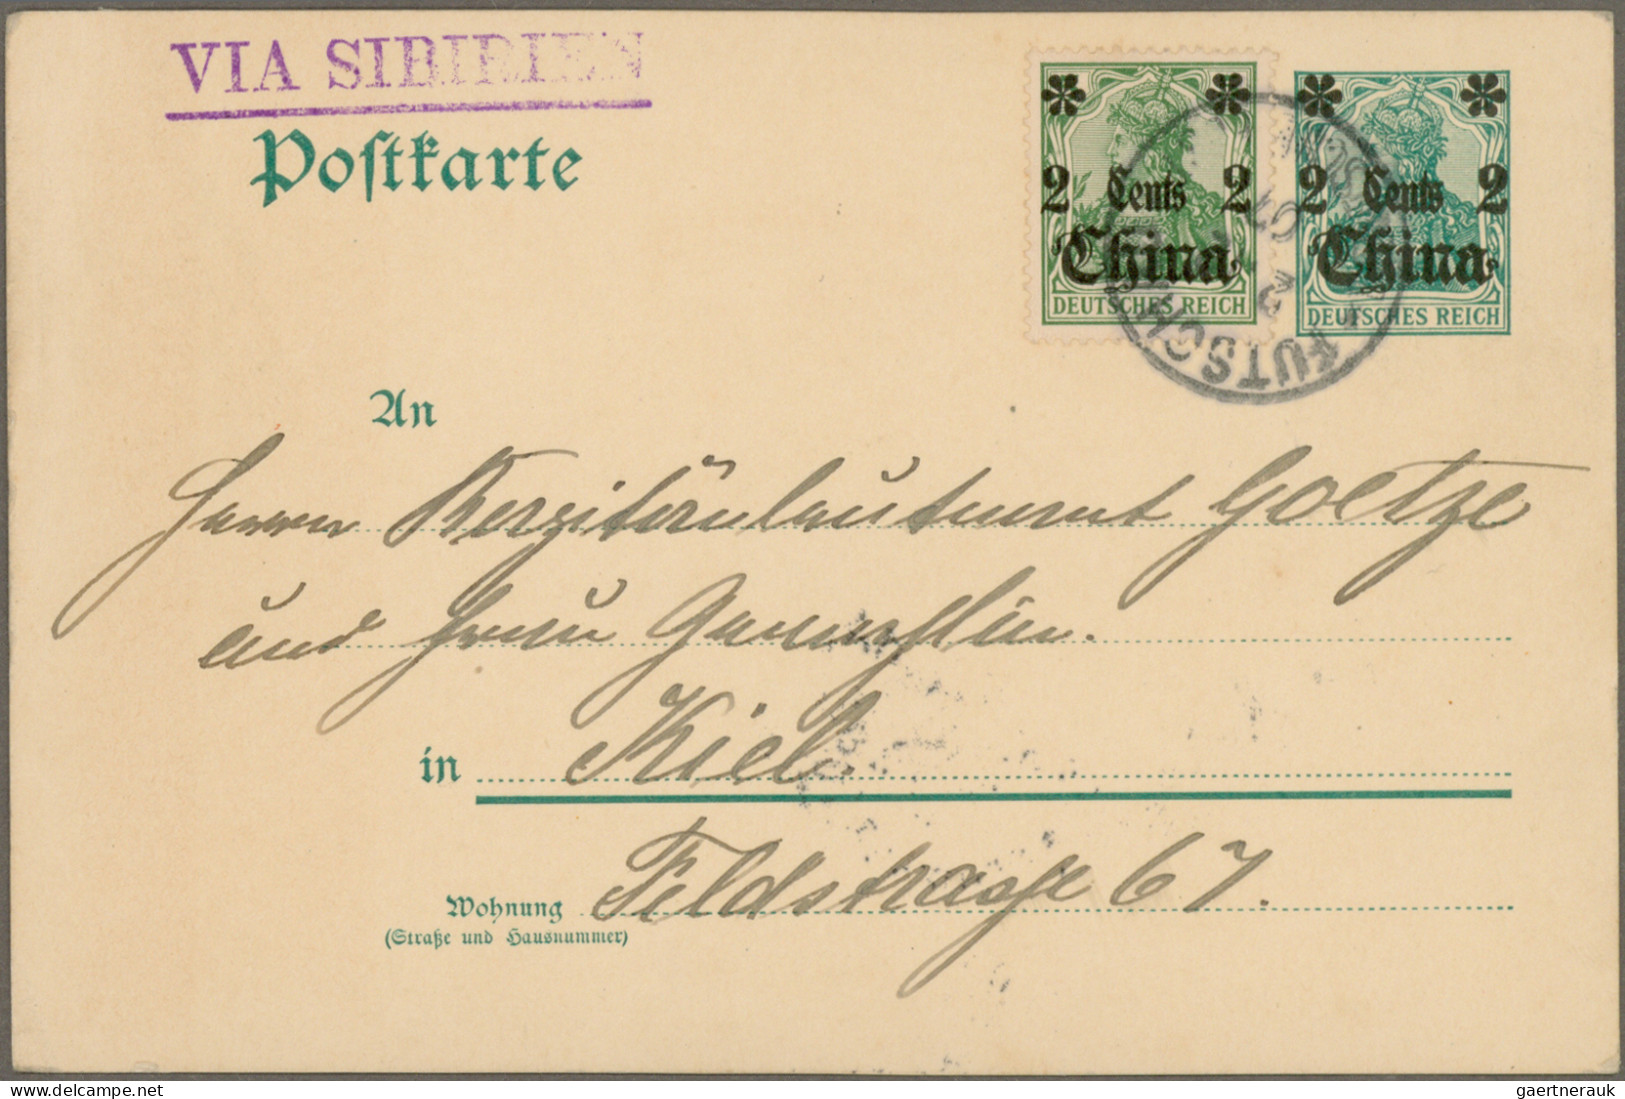 Deutsche Post in China: 1905/1917, Partie mit 8 Belegen, dabei Mi.39 mit seltene